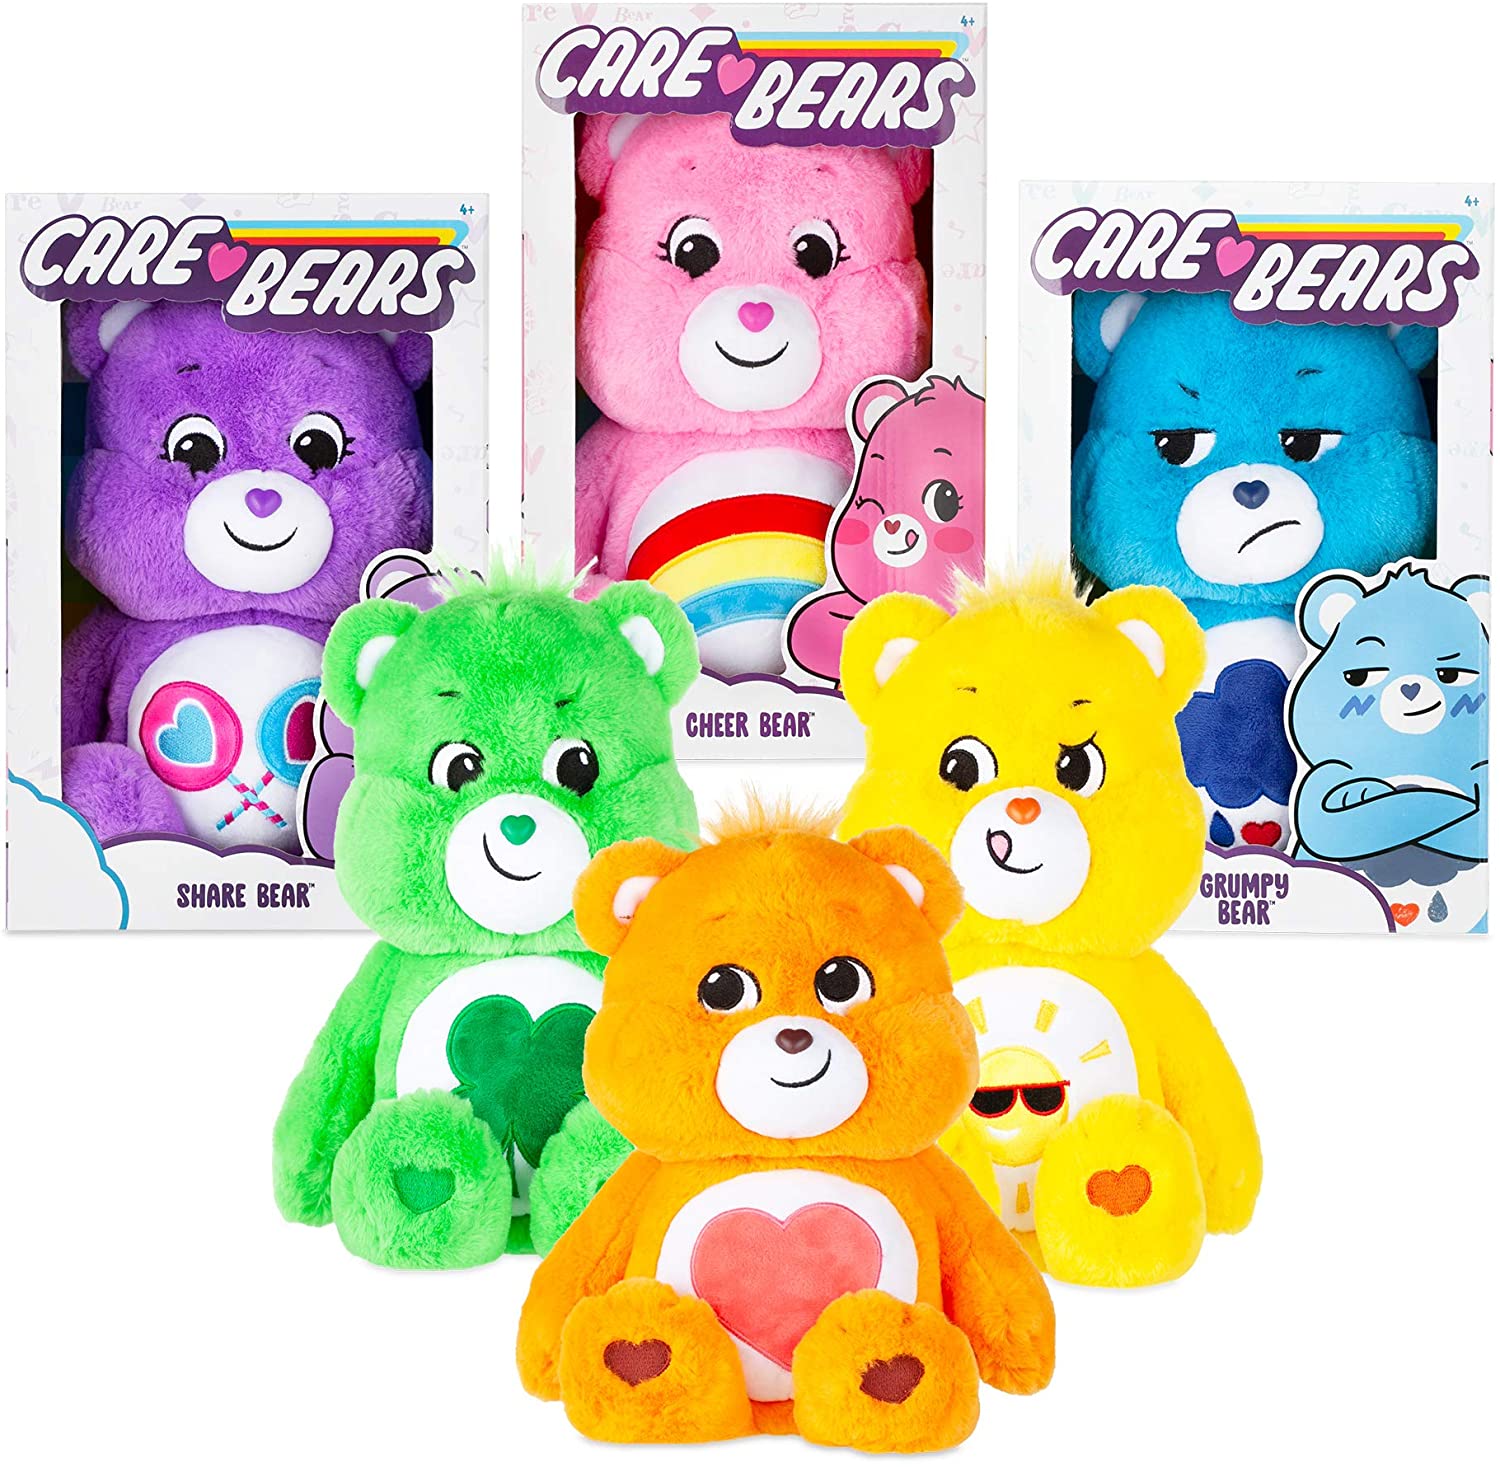 NEW 2020 Care Bears 14" Medium Plush Soft Huggable Material Grumpy Bear 